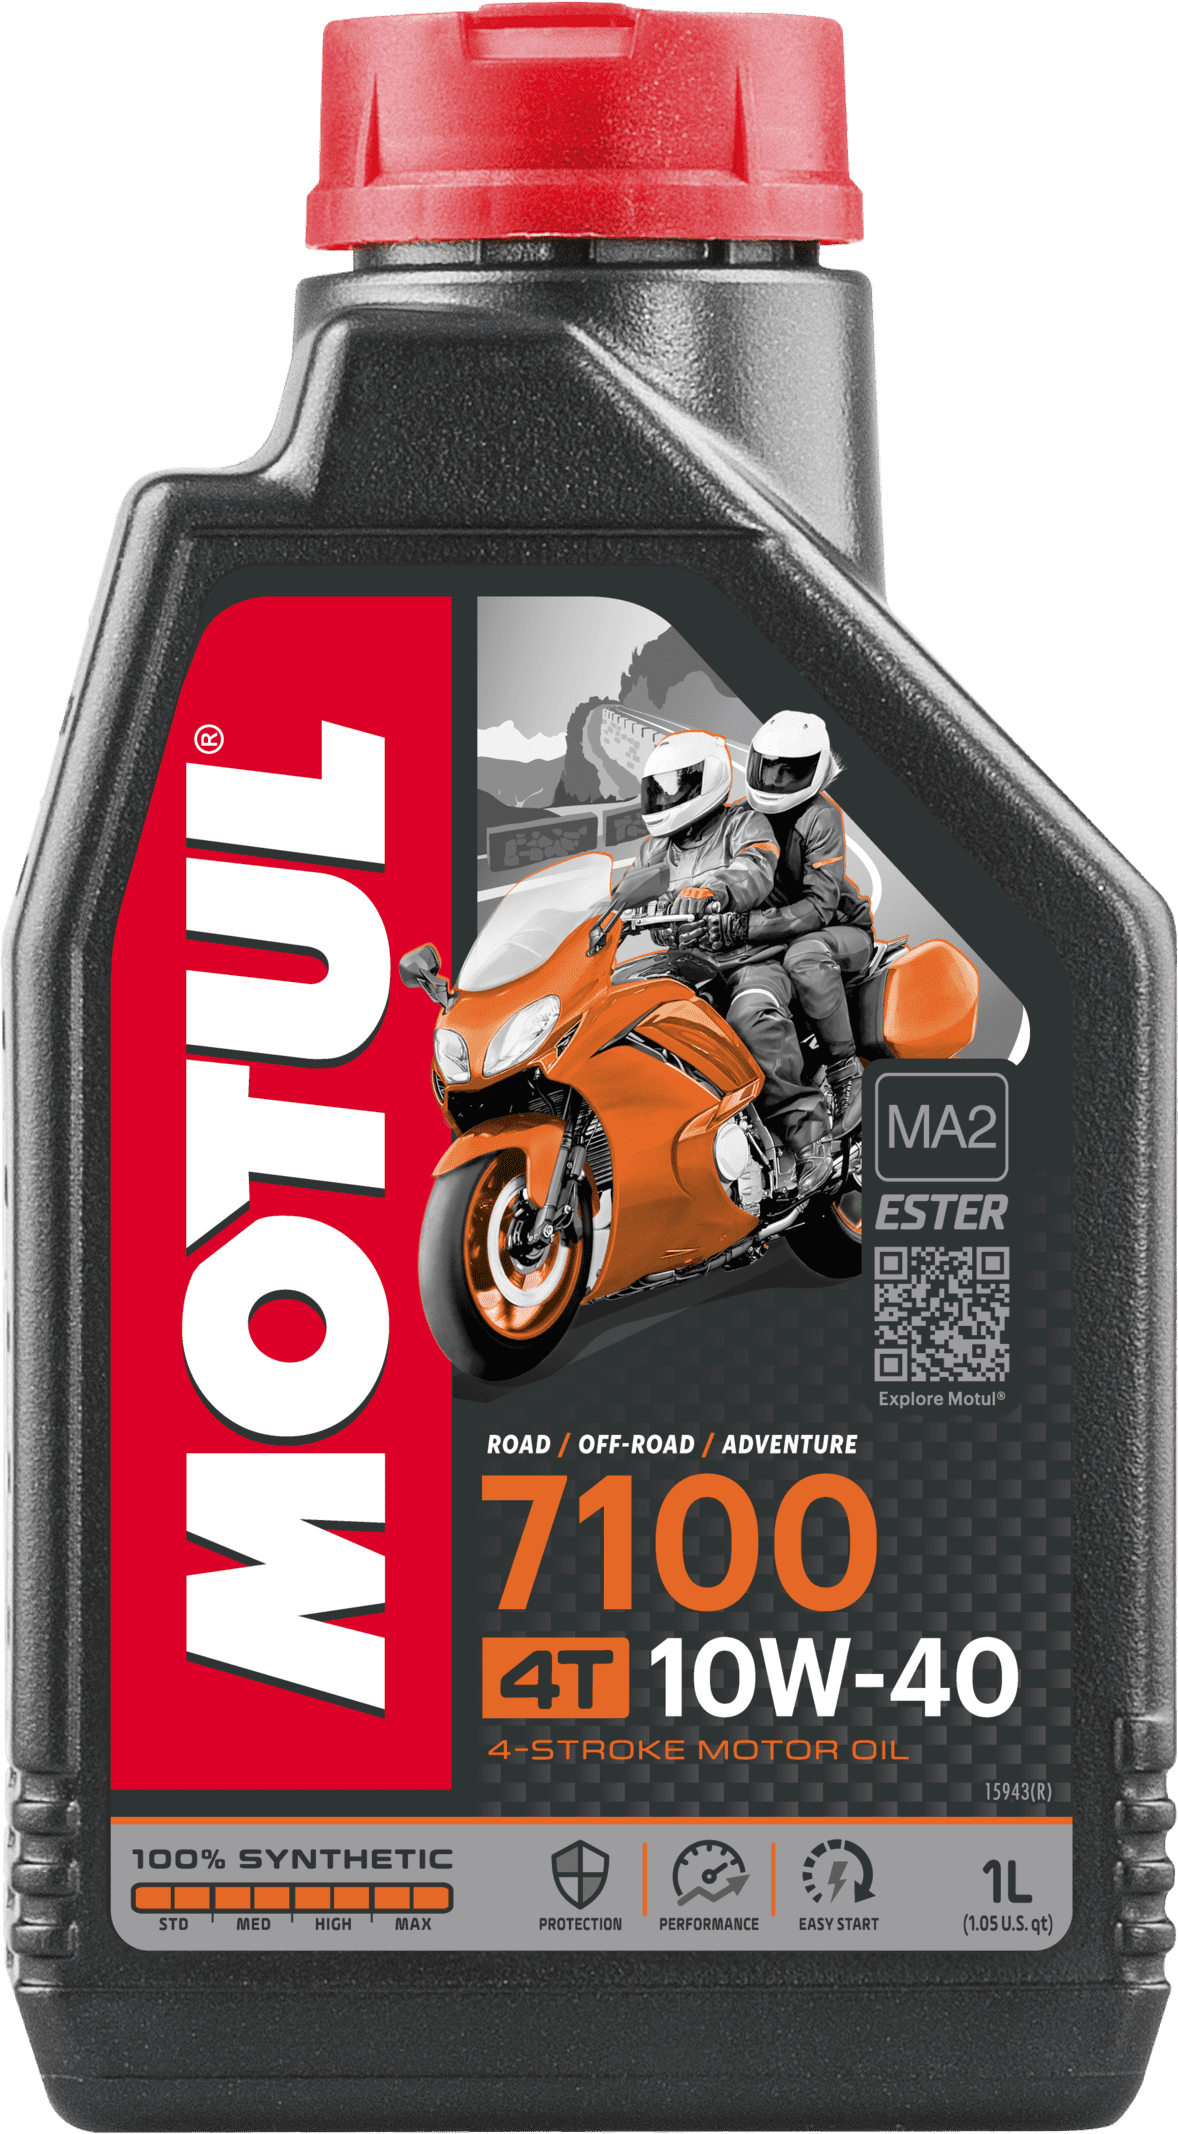 104091-1 Lubrifiant hautes performances pour motos - 100% Synthèse – Ester pour améliorer la résistance du film d'huile à hautes températures et hauts régimes de rotation moteur.